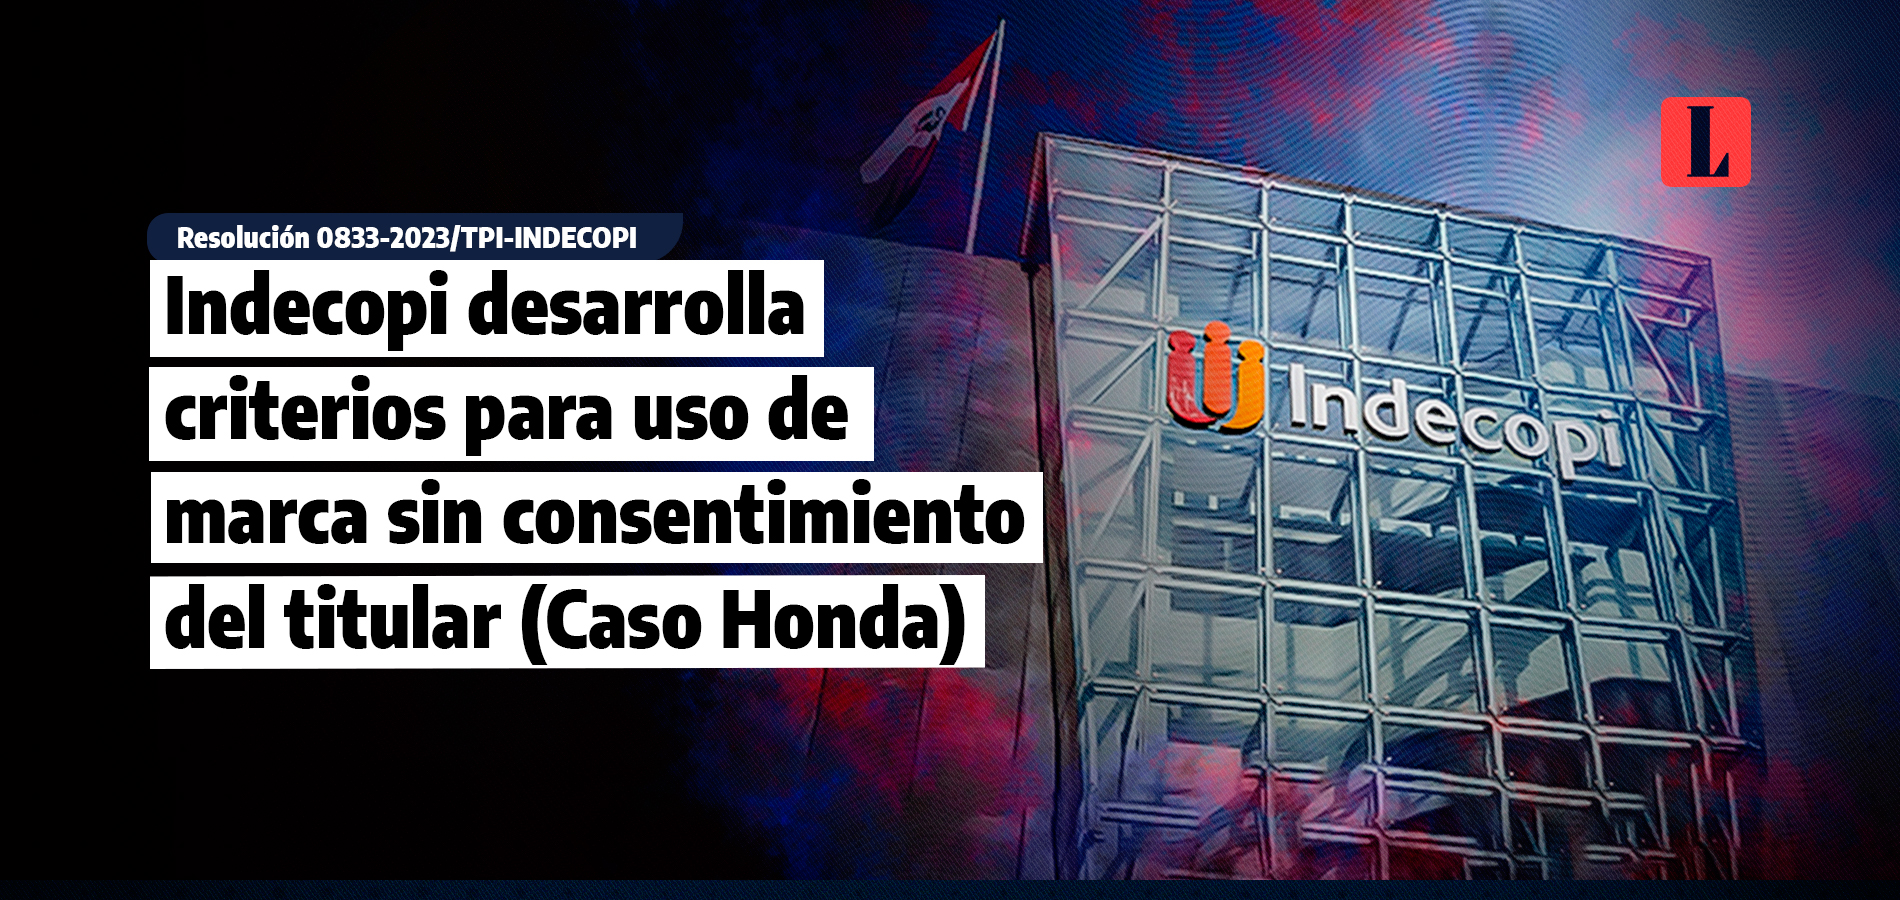 Indecopi desarrolla criterios para uso de marca sin consentimiento del titular (caso Honda)